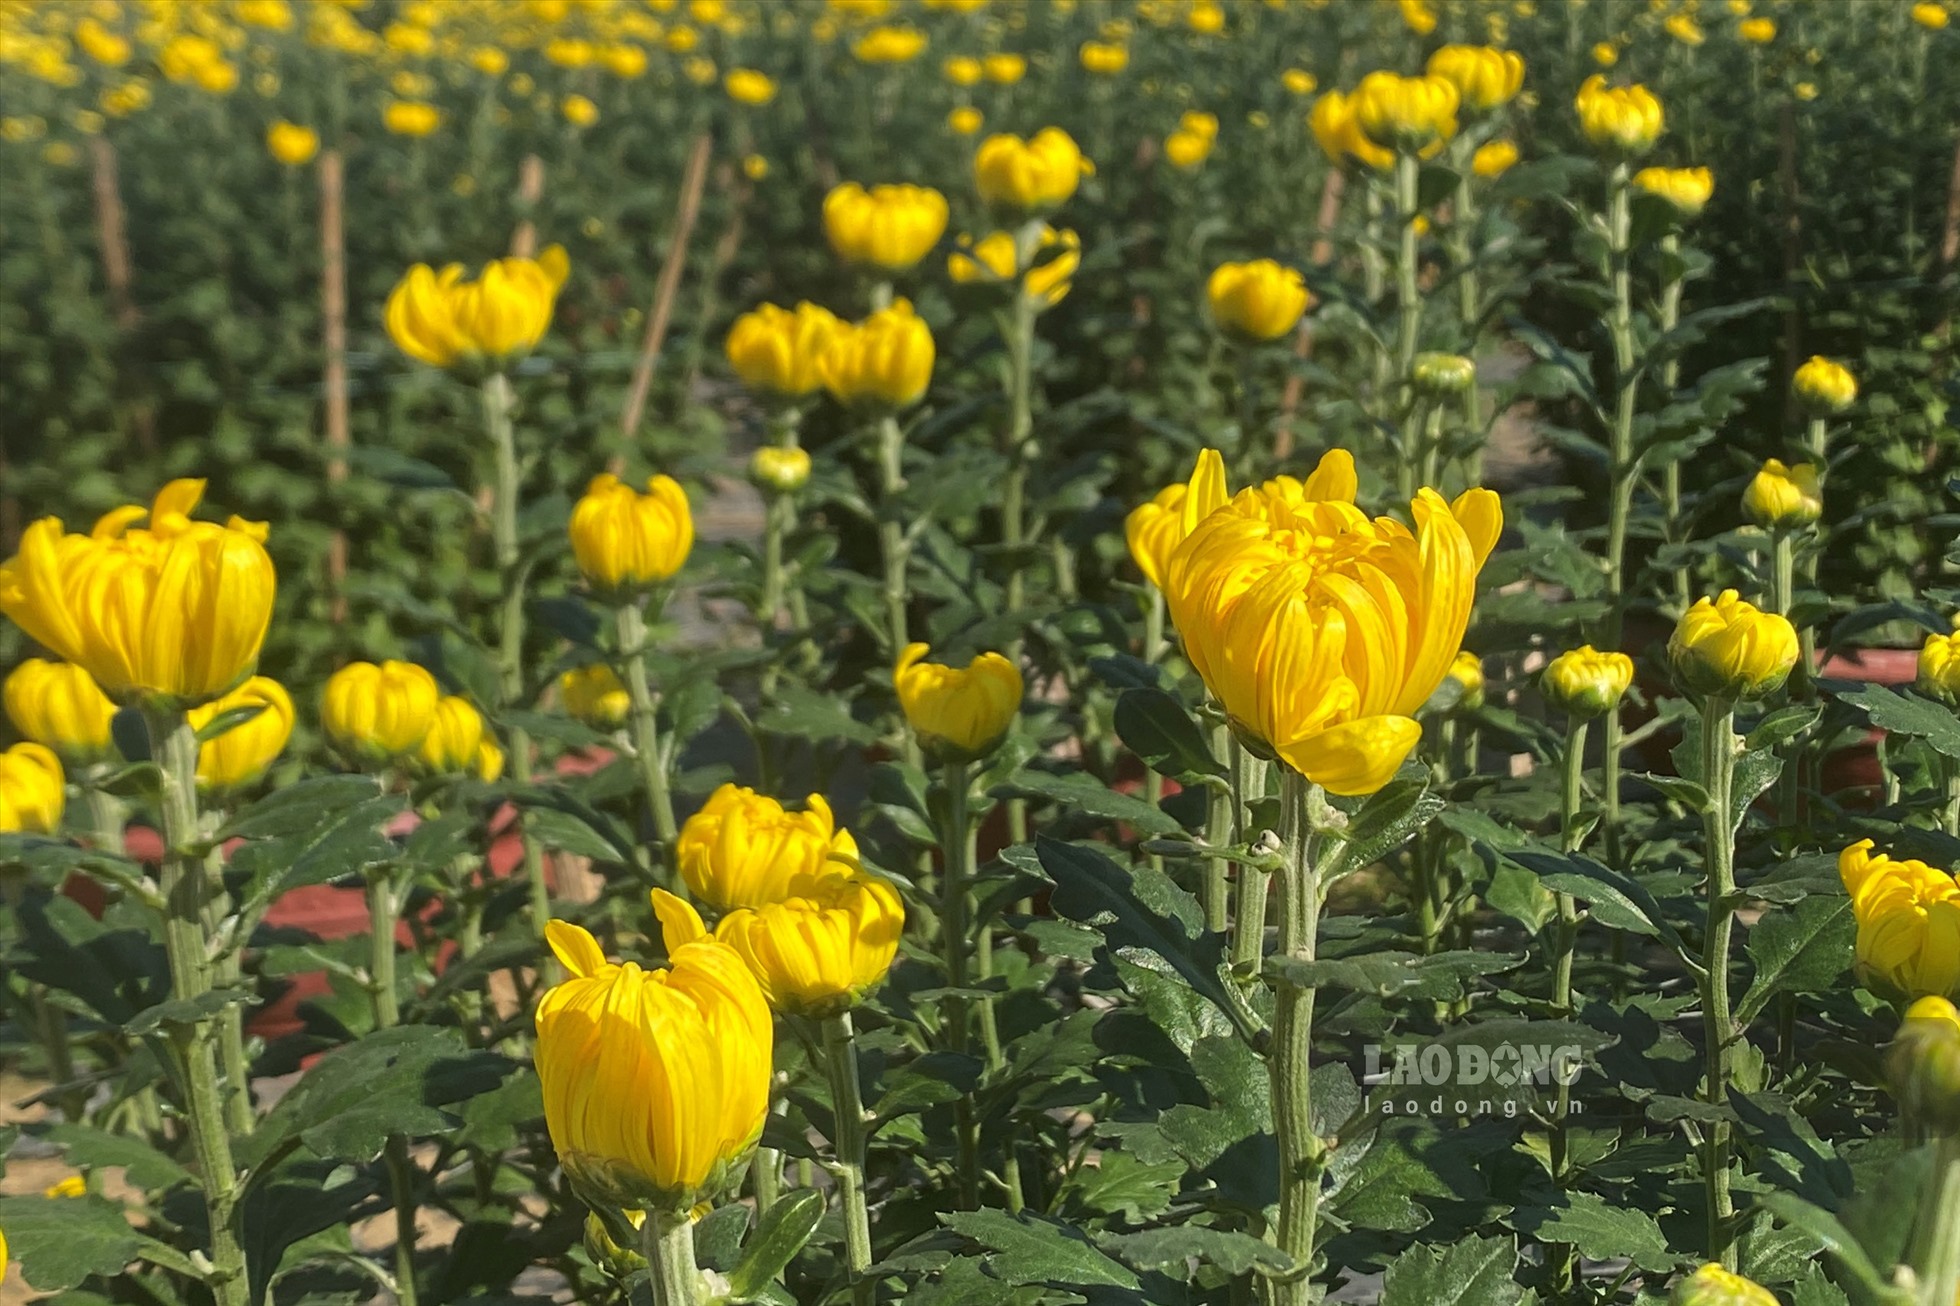 Tại đường 30 Tháng 4, loại hoa được bày bán đa phần là hoa cúc vàng đang trong giai đoạn sắp nở.